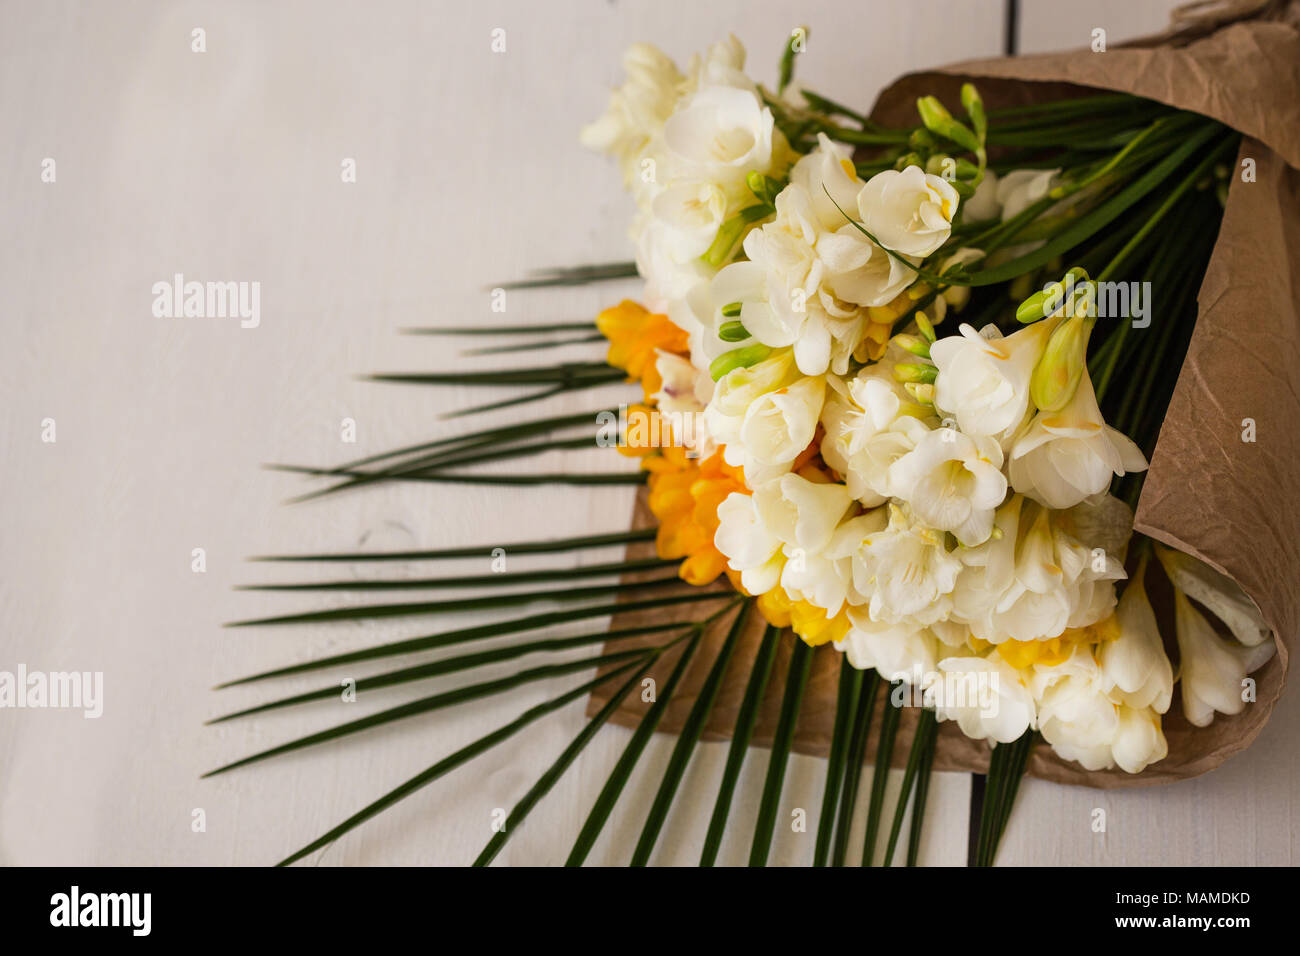 Bouquet de fleurs de freesia blanc et jaune enveloppé dans du papier craft  blanc pose sur table. Copier l'espace Photo Stock - Alamy